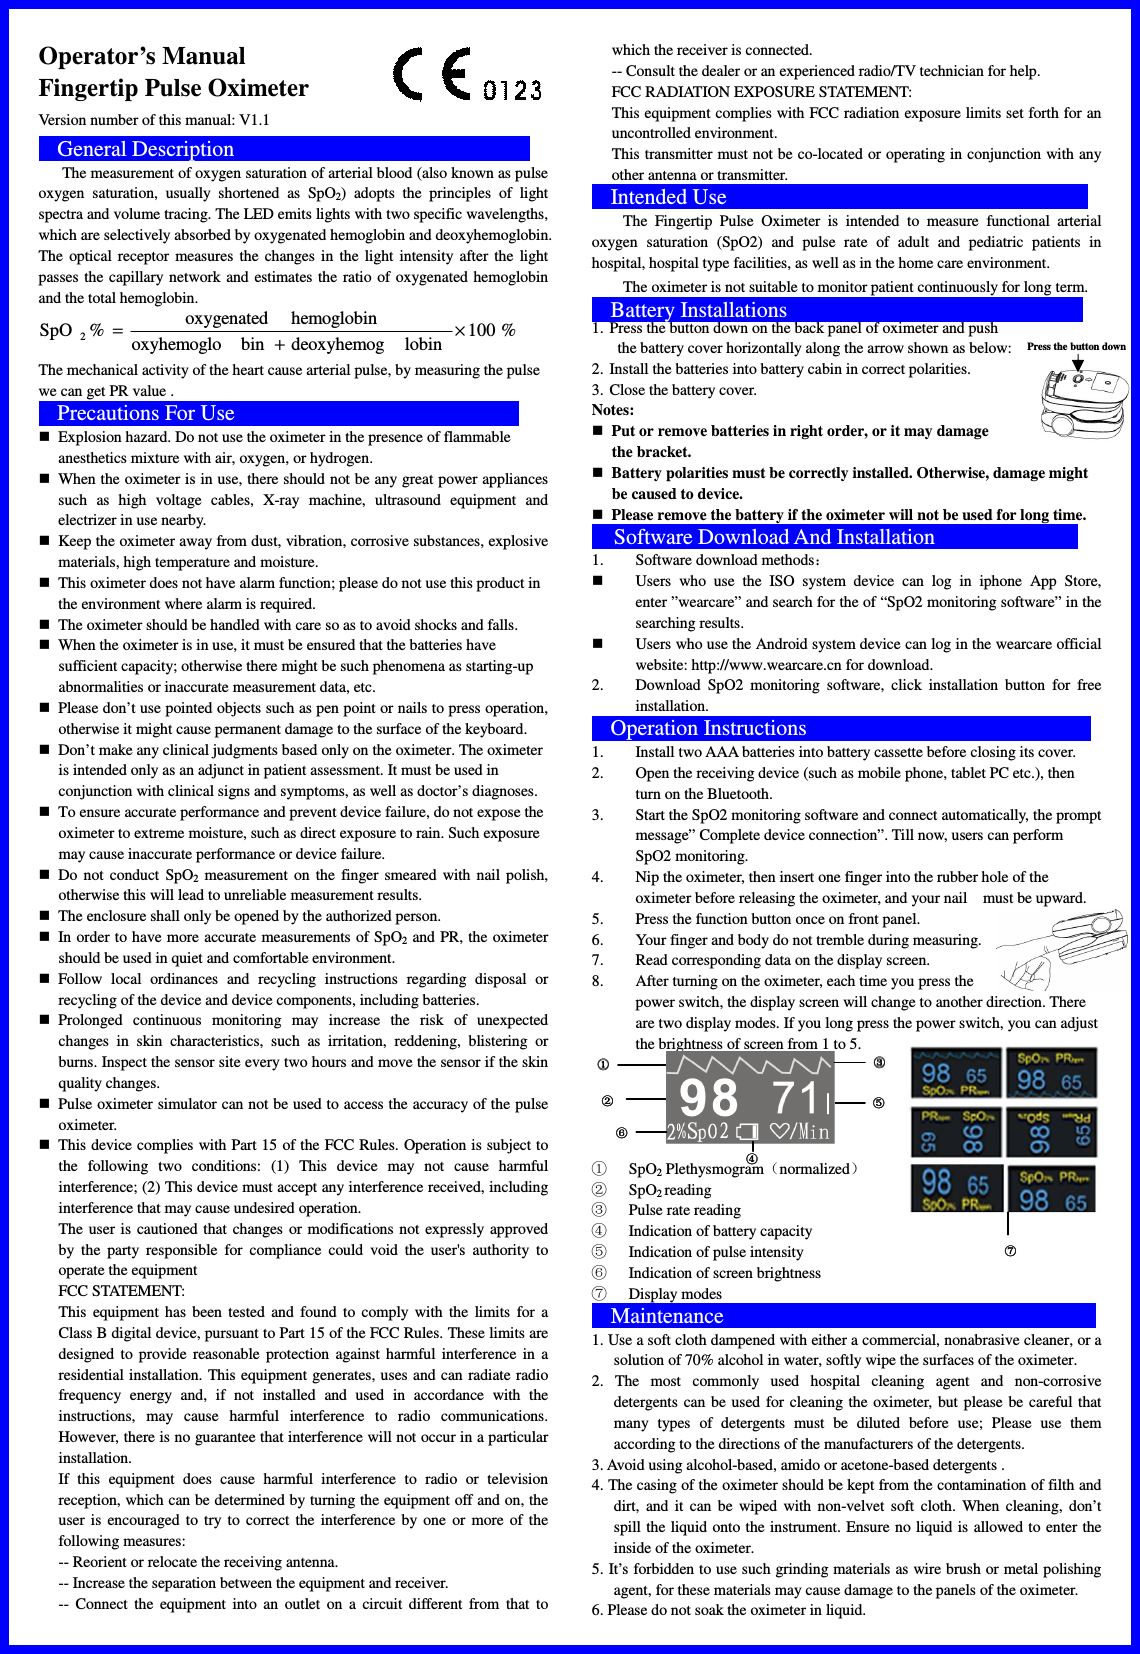 Biolight Meditech M70C Fingertip Pulse Oximeter User Manual